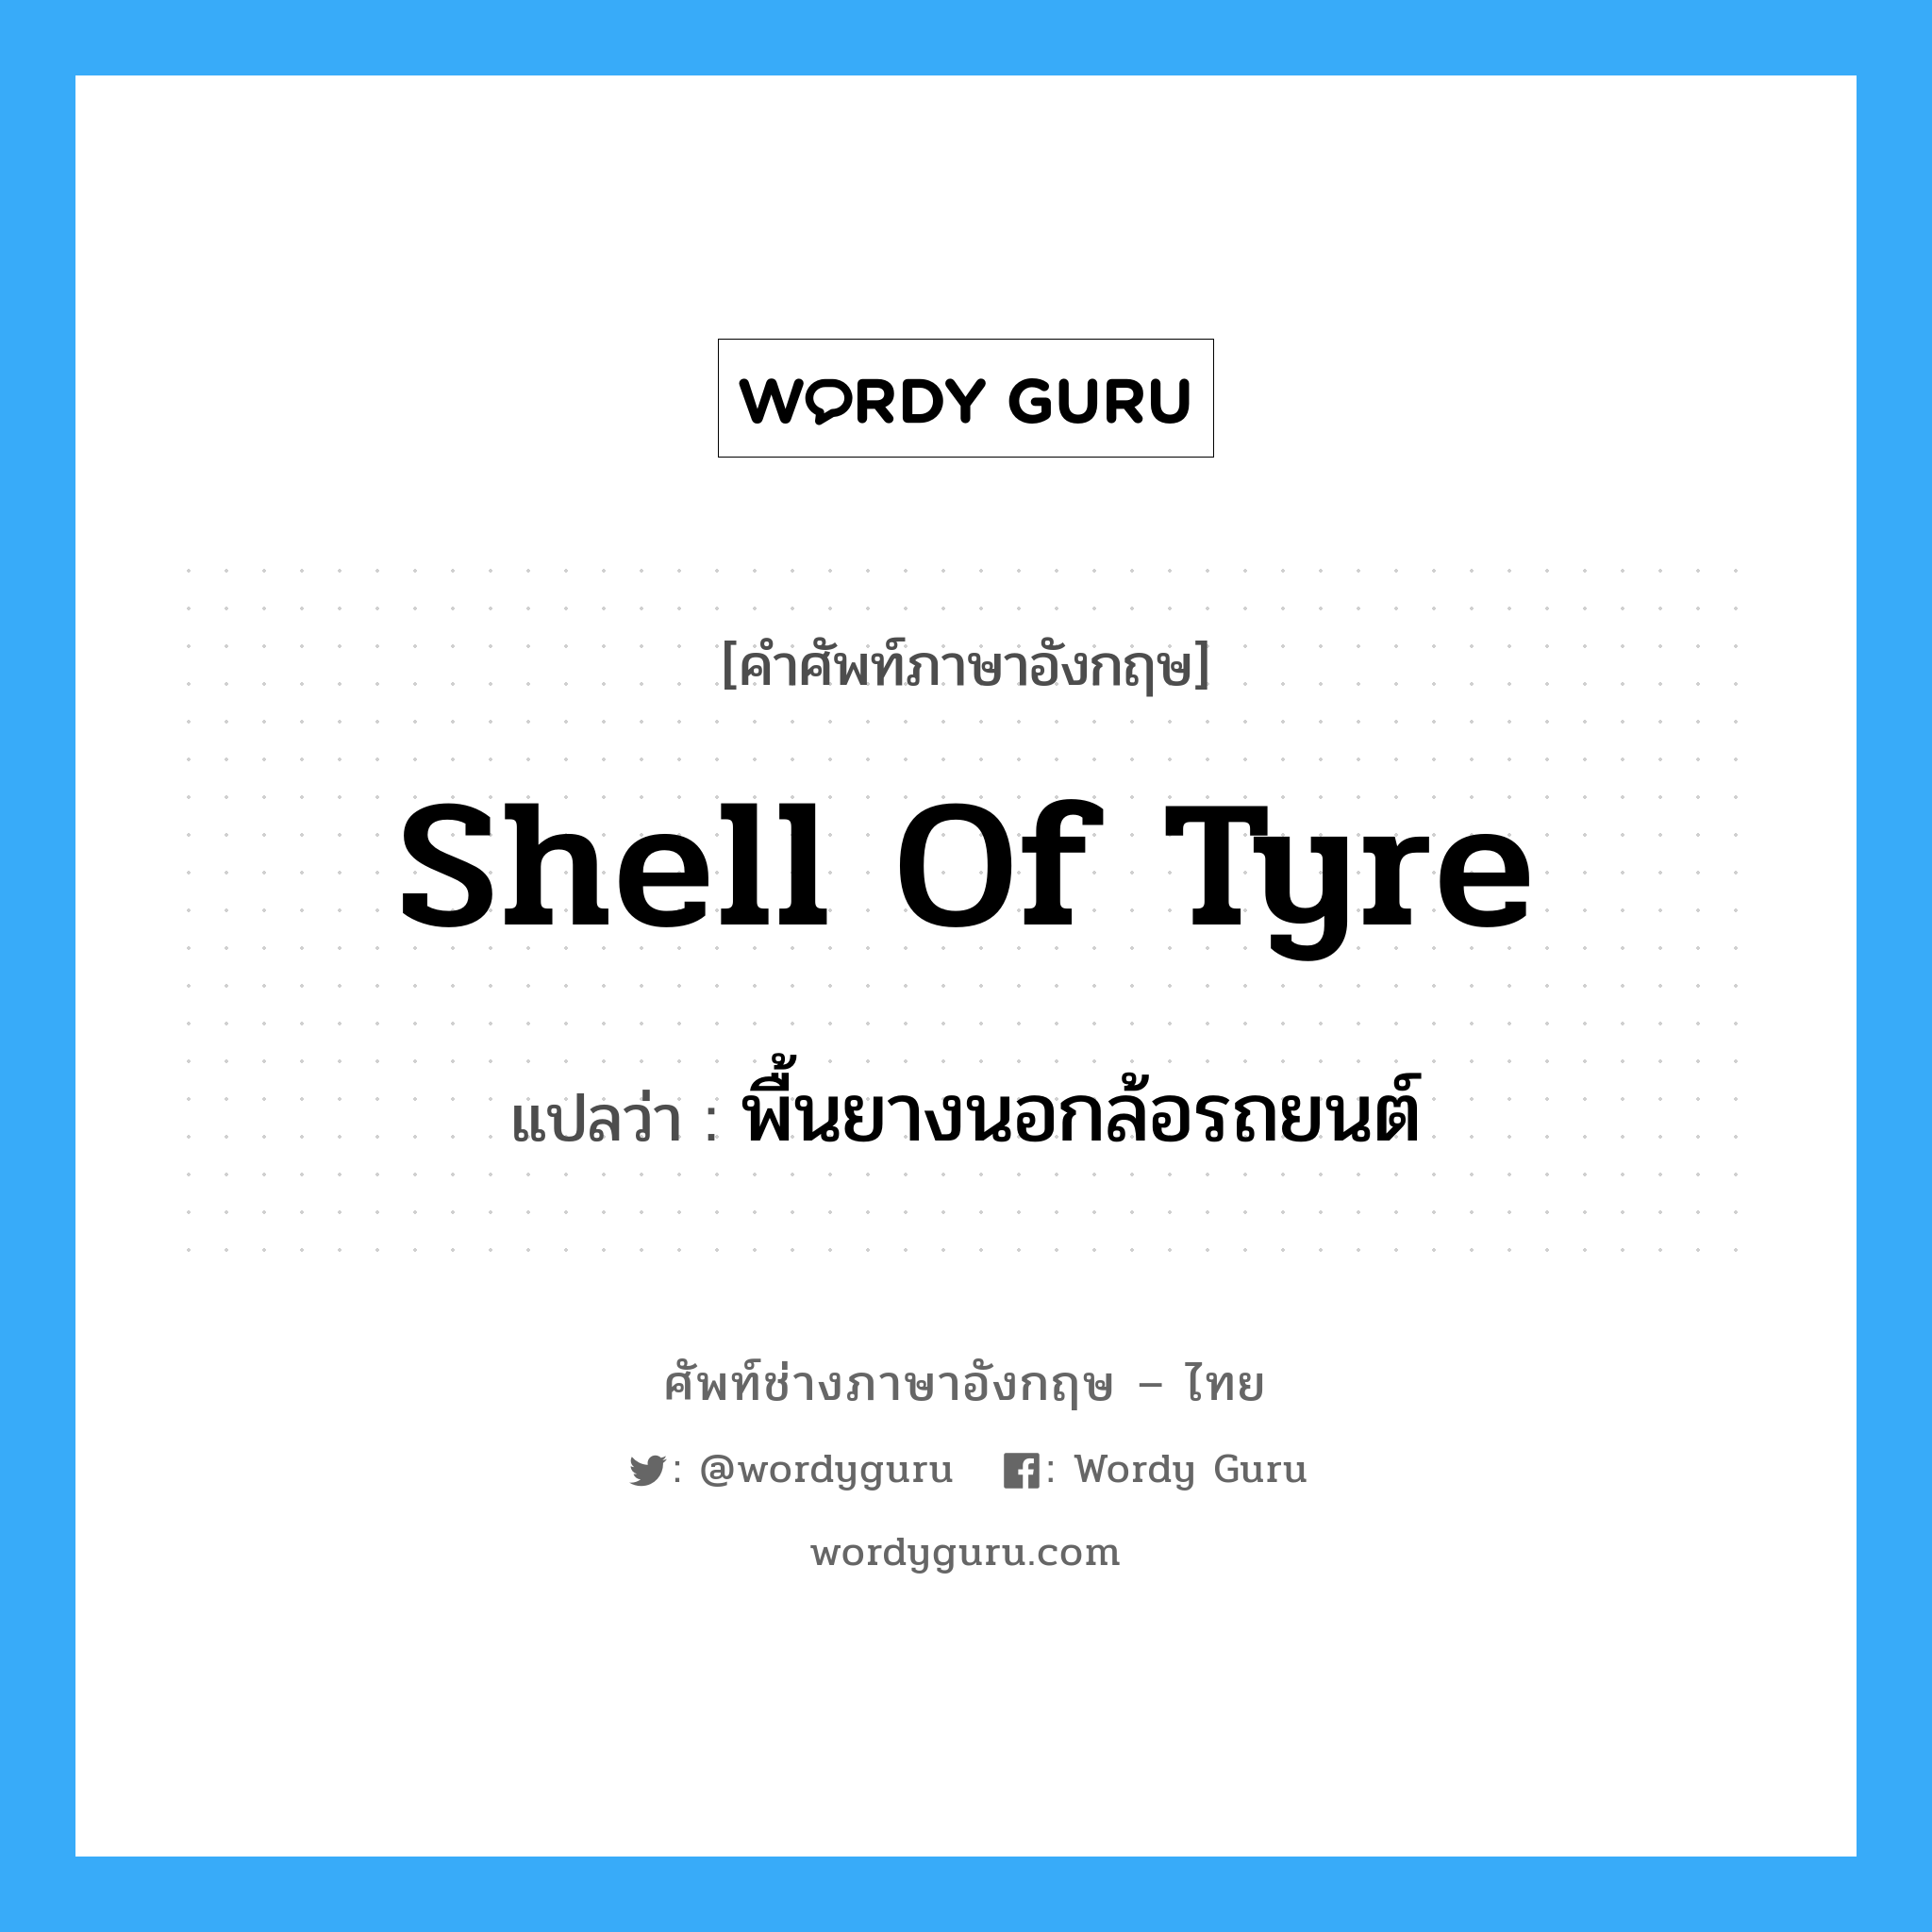 shell of tyre แปลว่า?, คำศัพท์ช่างภาษาอังกฤษ - ไทย shell of tyre คำศัพท์ภาษาอังกฤษ shell of tyre แปลว่า พื้นยางนอกล้อรถยนต์